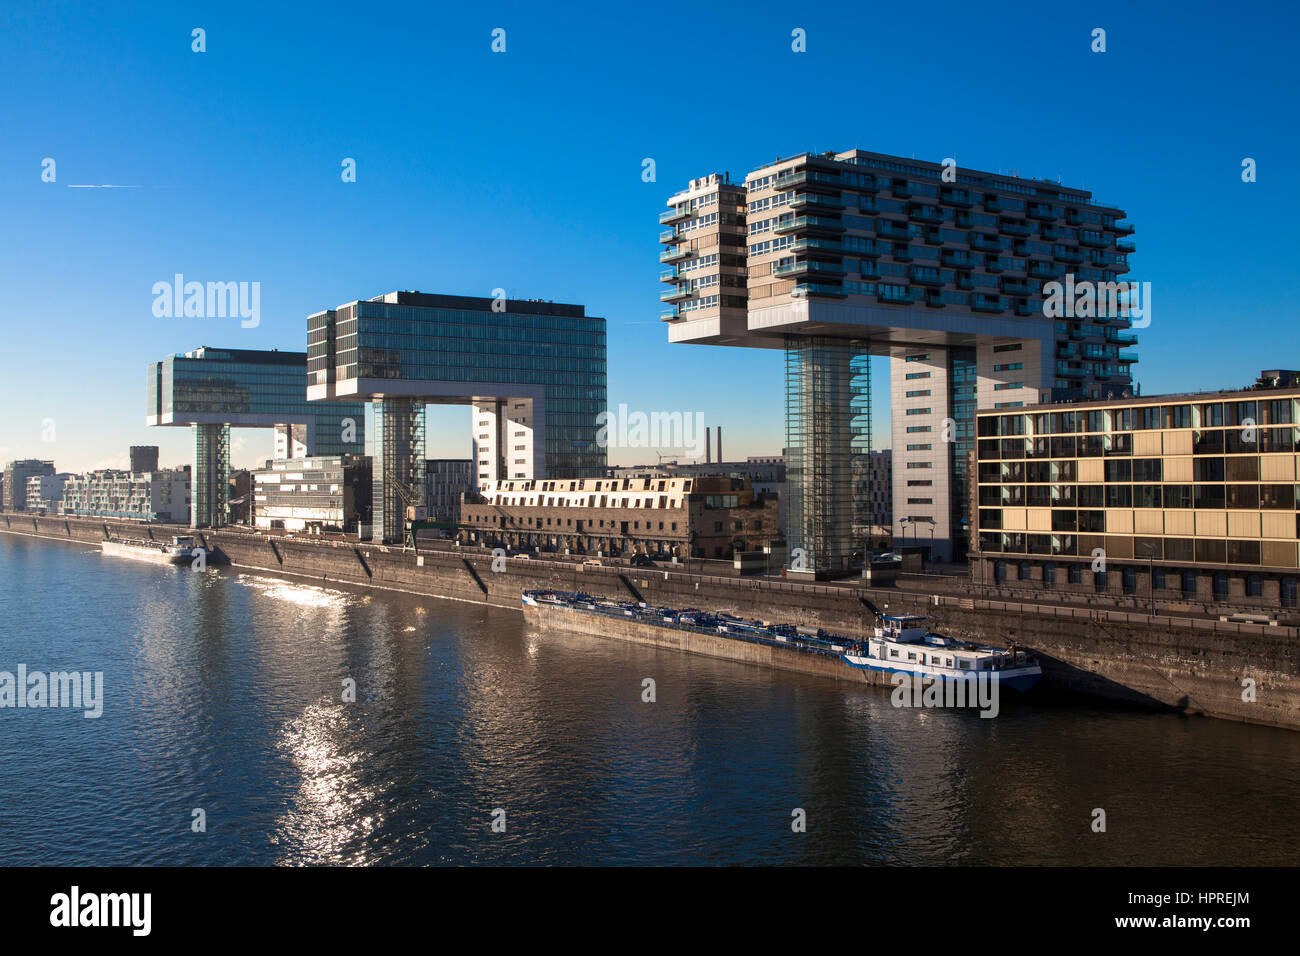 Europa, Deutschland, Köln, die Kran-Häuser am Hafen Rheinau Architekten Hadi Teherani, Rhein. Stockfoto